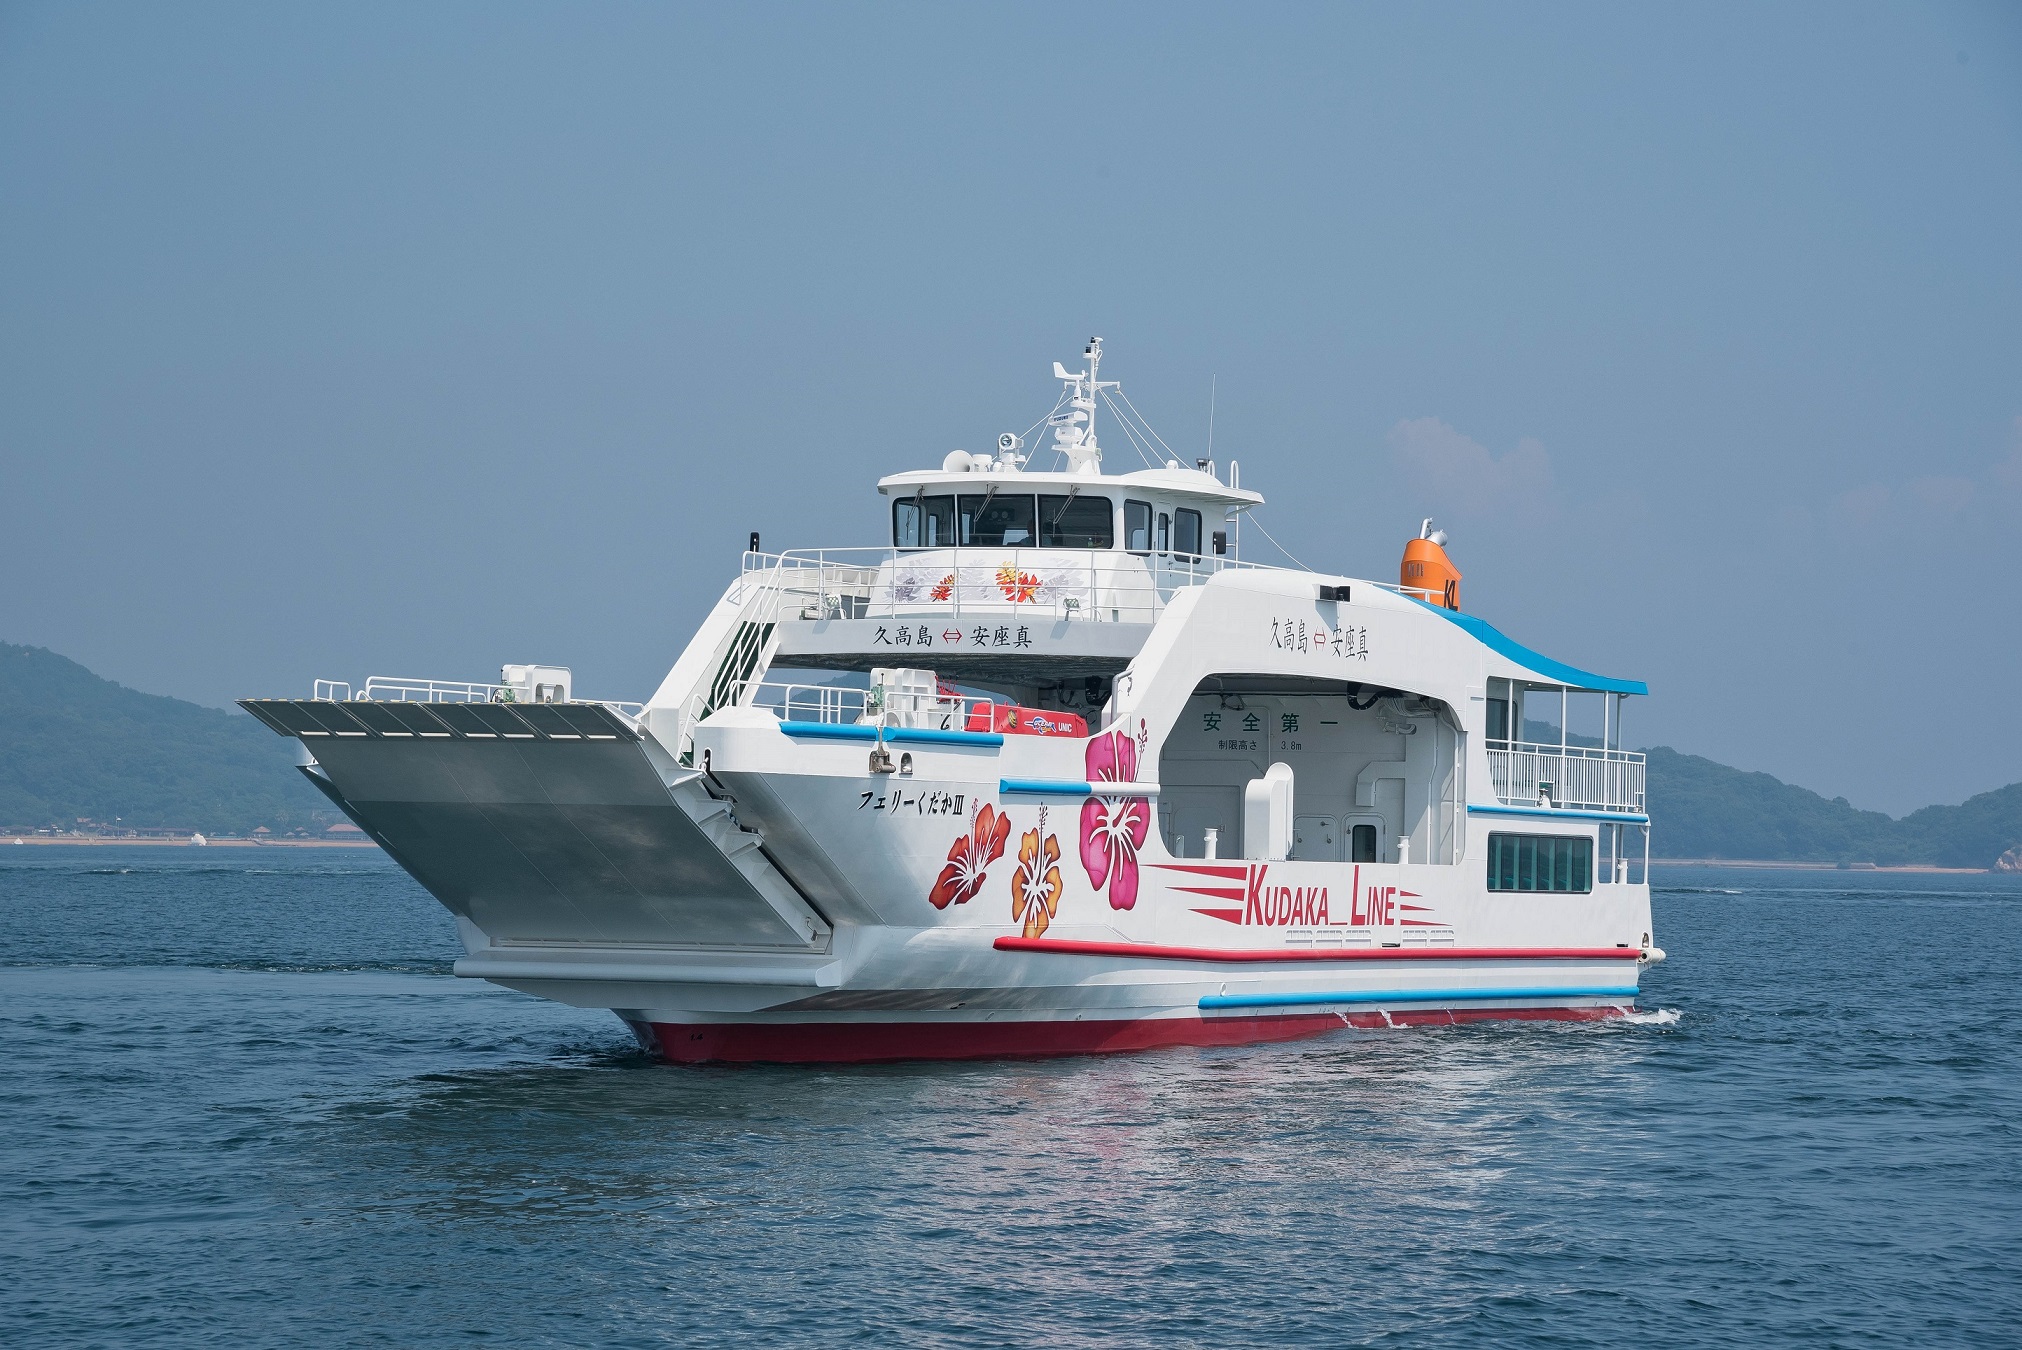 连接冲绳本岛和久高岛之间的客轮兼汽车渡轮 “渡轮 KUDAKA III” 建成并交付